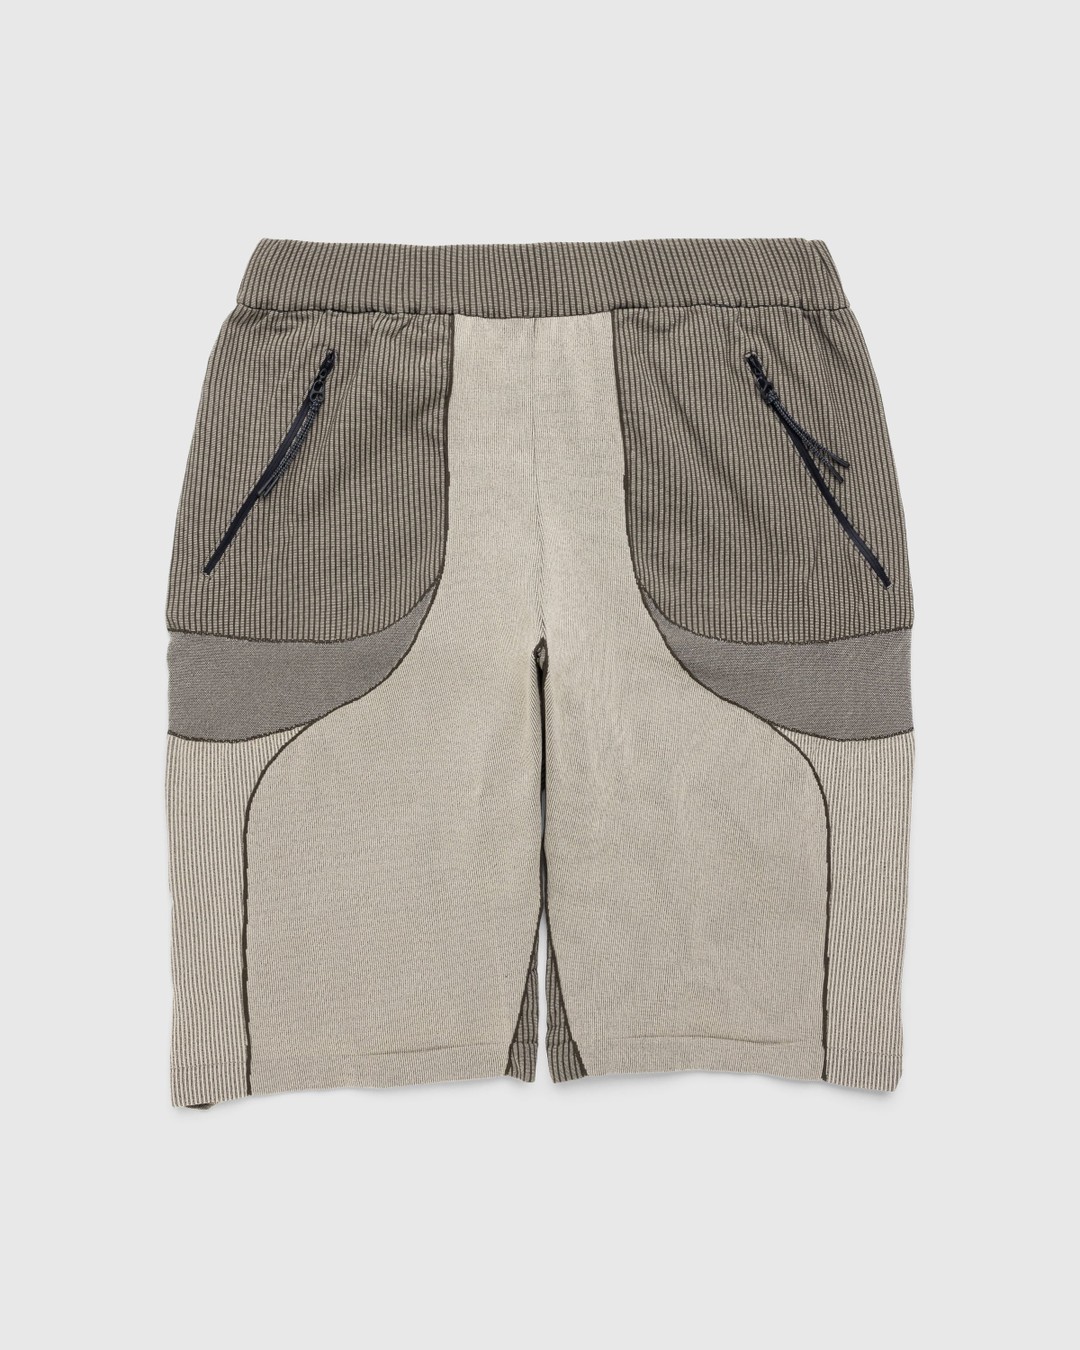 _J.L-A.L_ – Gelder Knitted Short Brown/Sand - Shorts - Green - Image 1